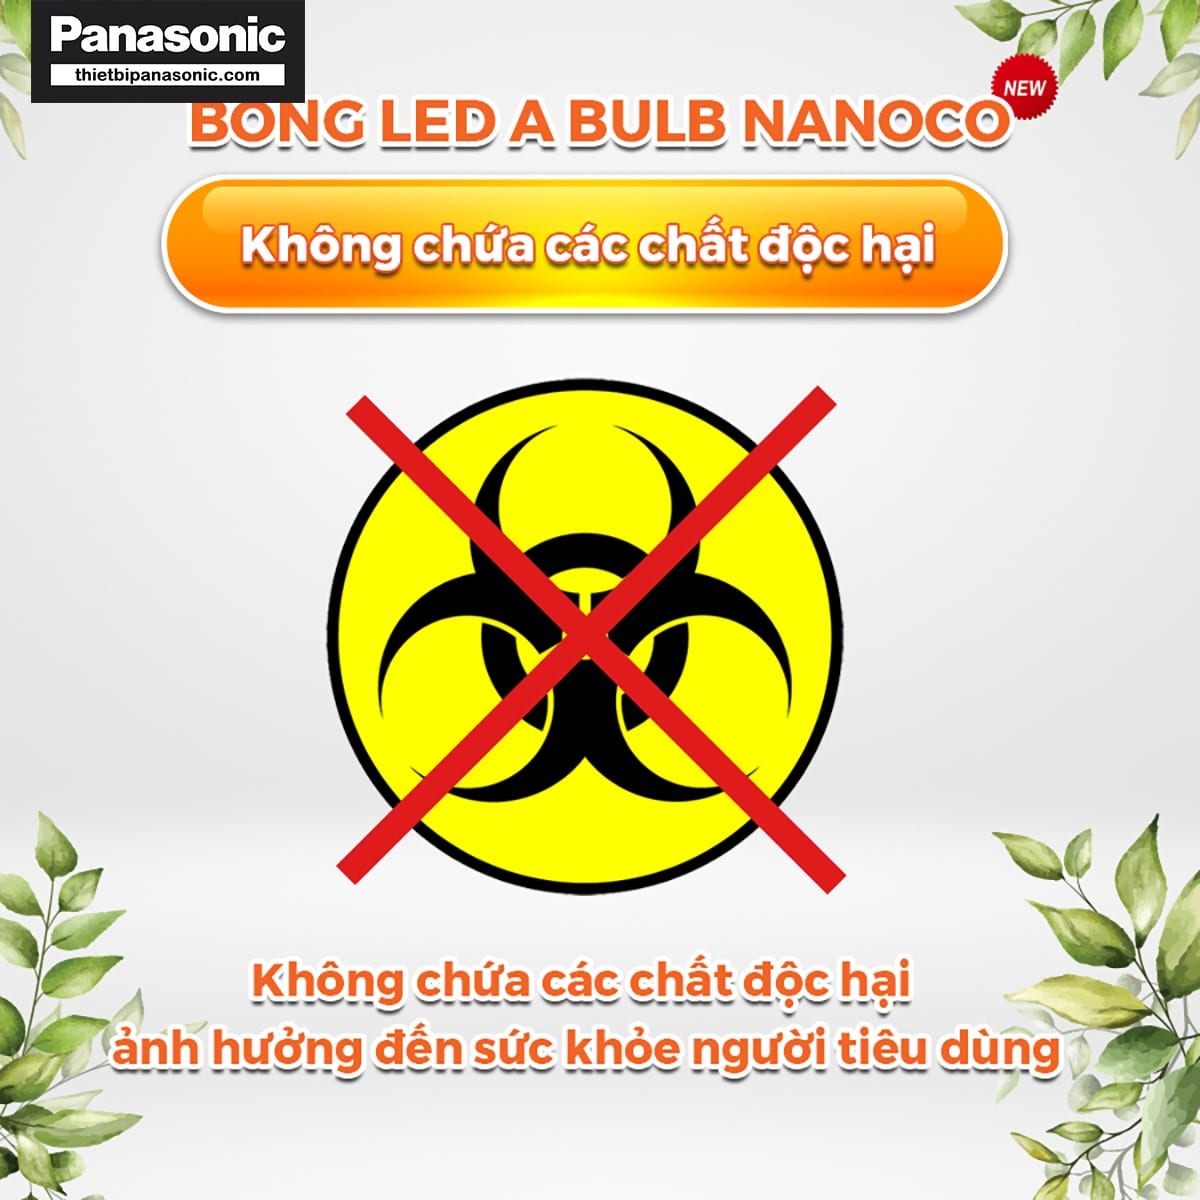 Bóng đèn bulb 20W Nanoco NLBT206, NLBT203 không chứa các chất độc hại ảnh hưởng xấu tới sức khỏe